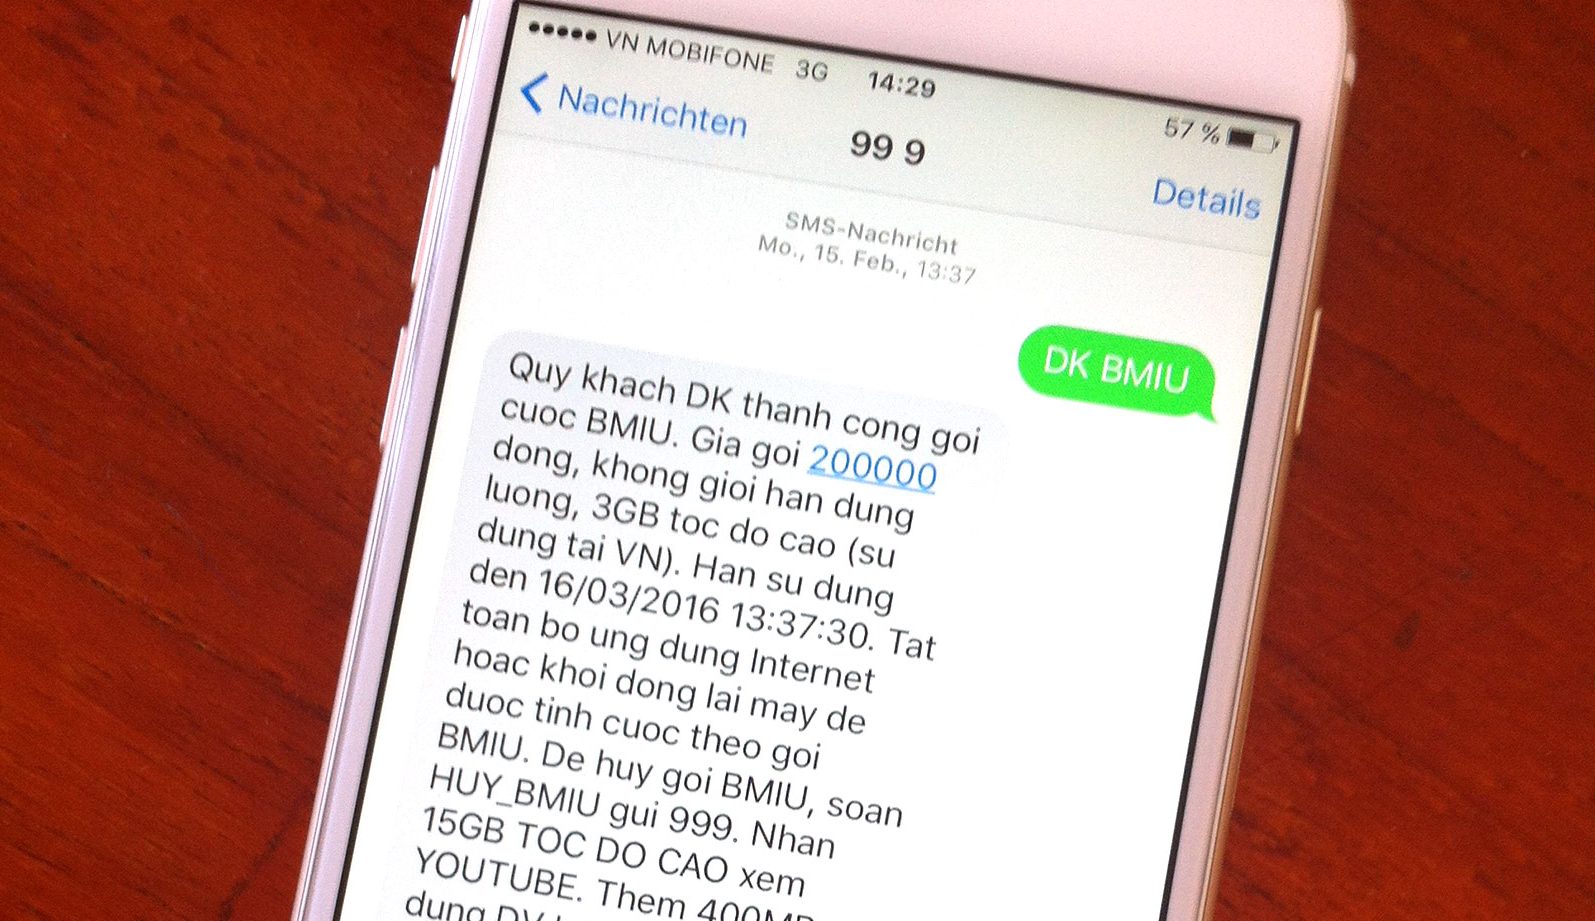 SIM Karte und mobile Internet in Vietnam